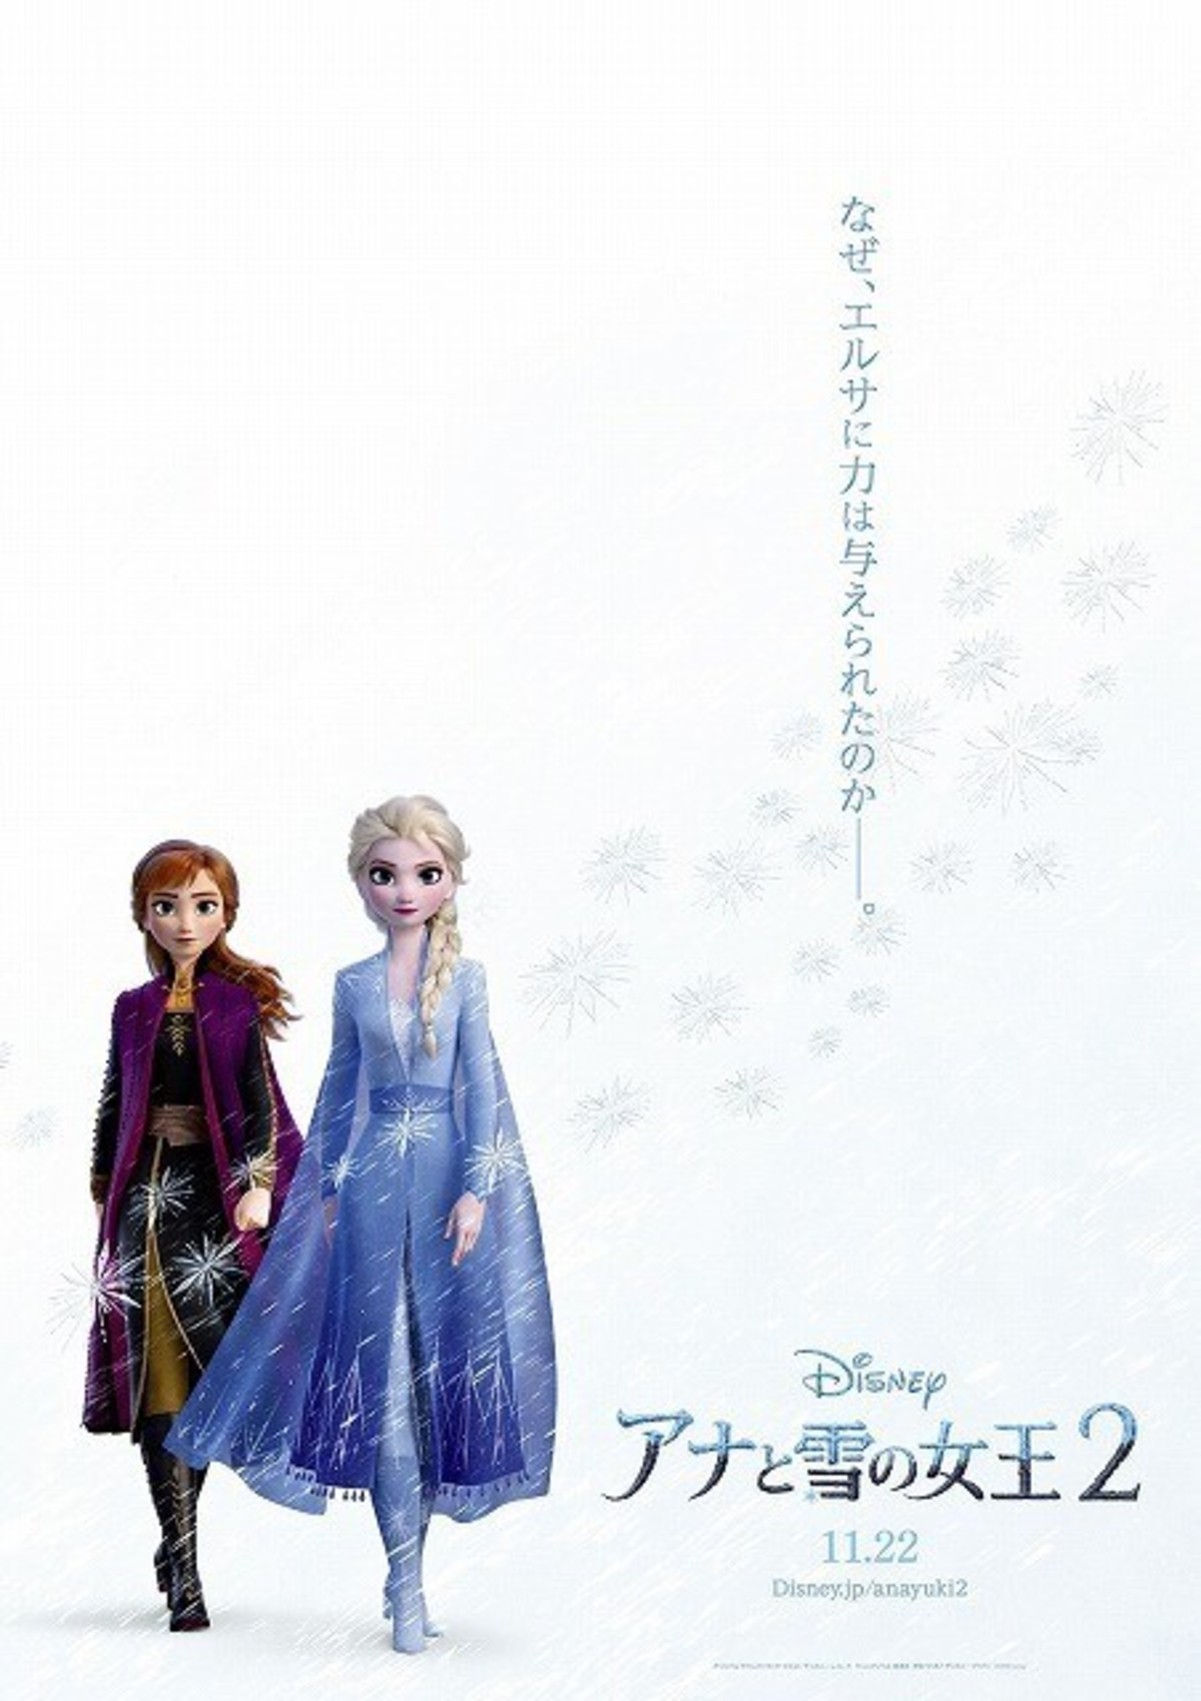 エルサの魔法の力をめぐる壮大な物語が幕を開ける アナと雪の女王2